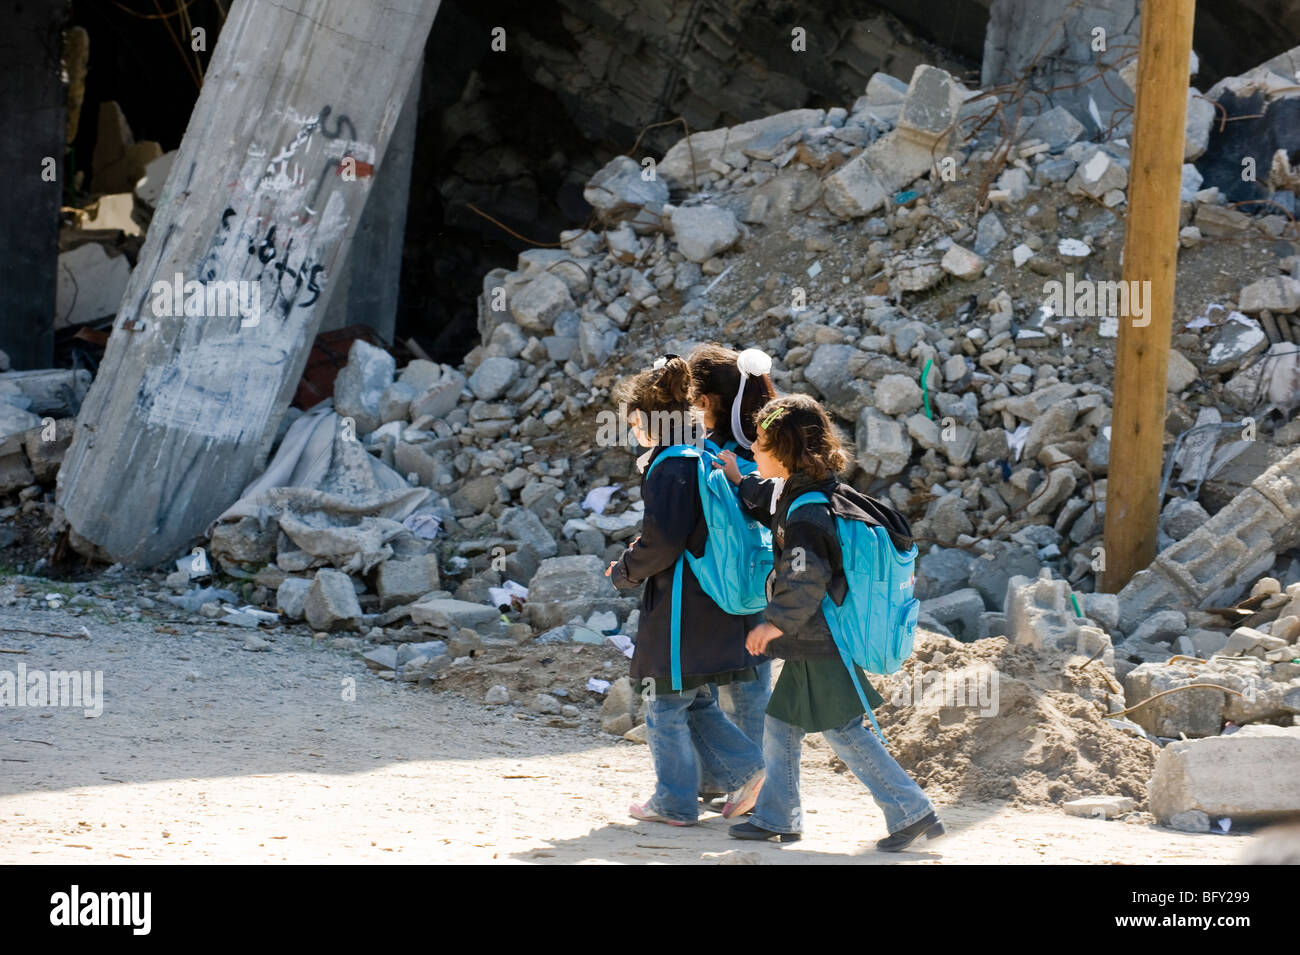 Bambini palestinesi lasciare la scuola UNRWA intorno a macerie a sinistra dopo la guerra israeliana nella Striscia di Gaza nel gennaio 2009. Foto Stock